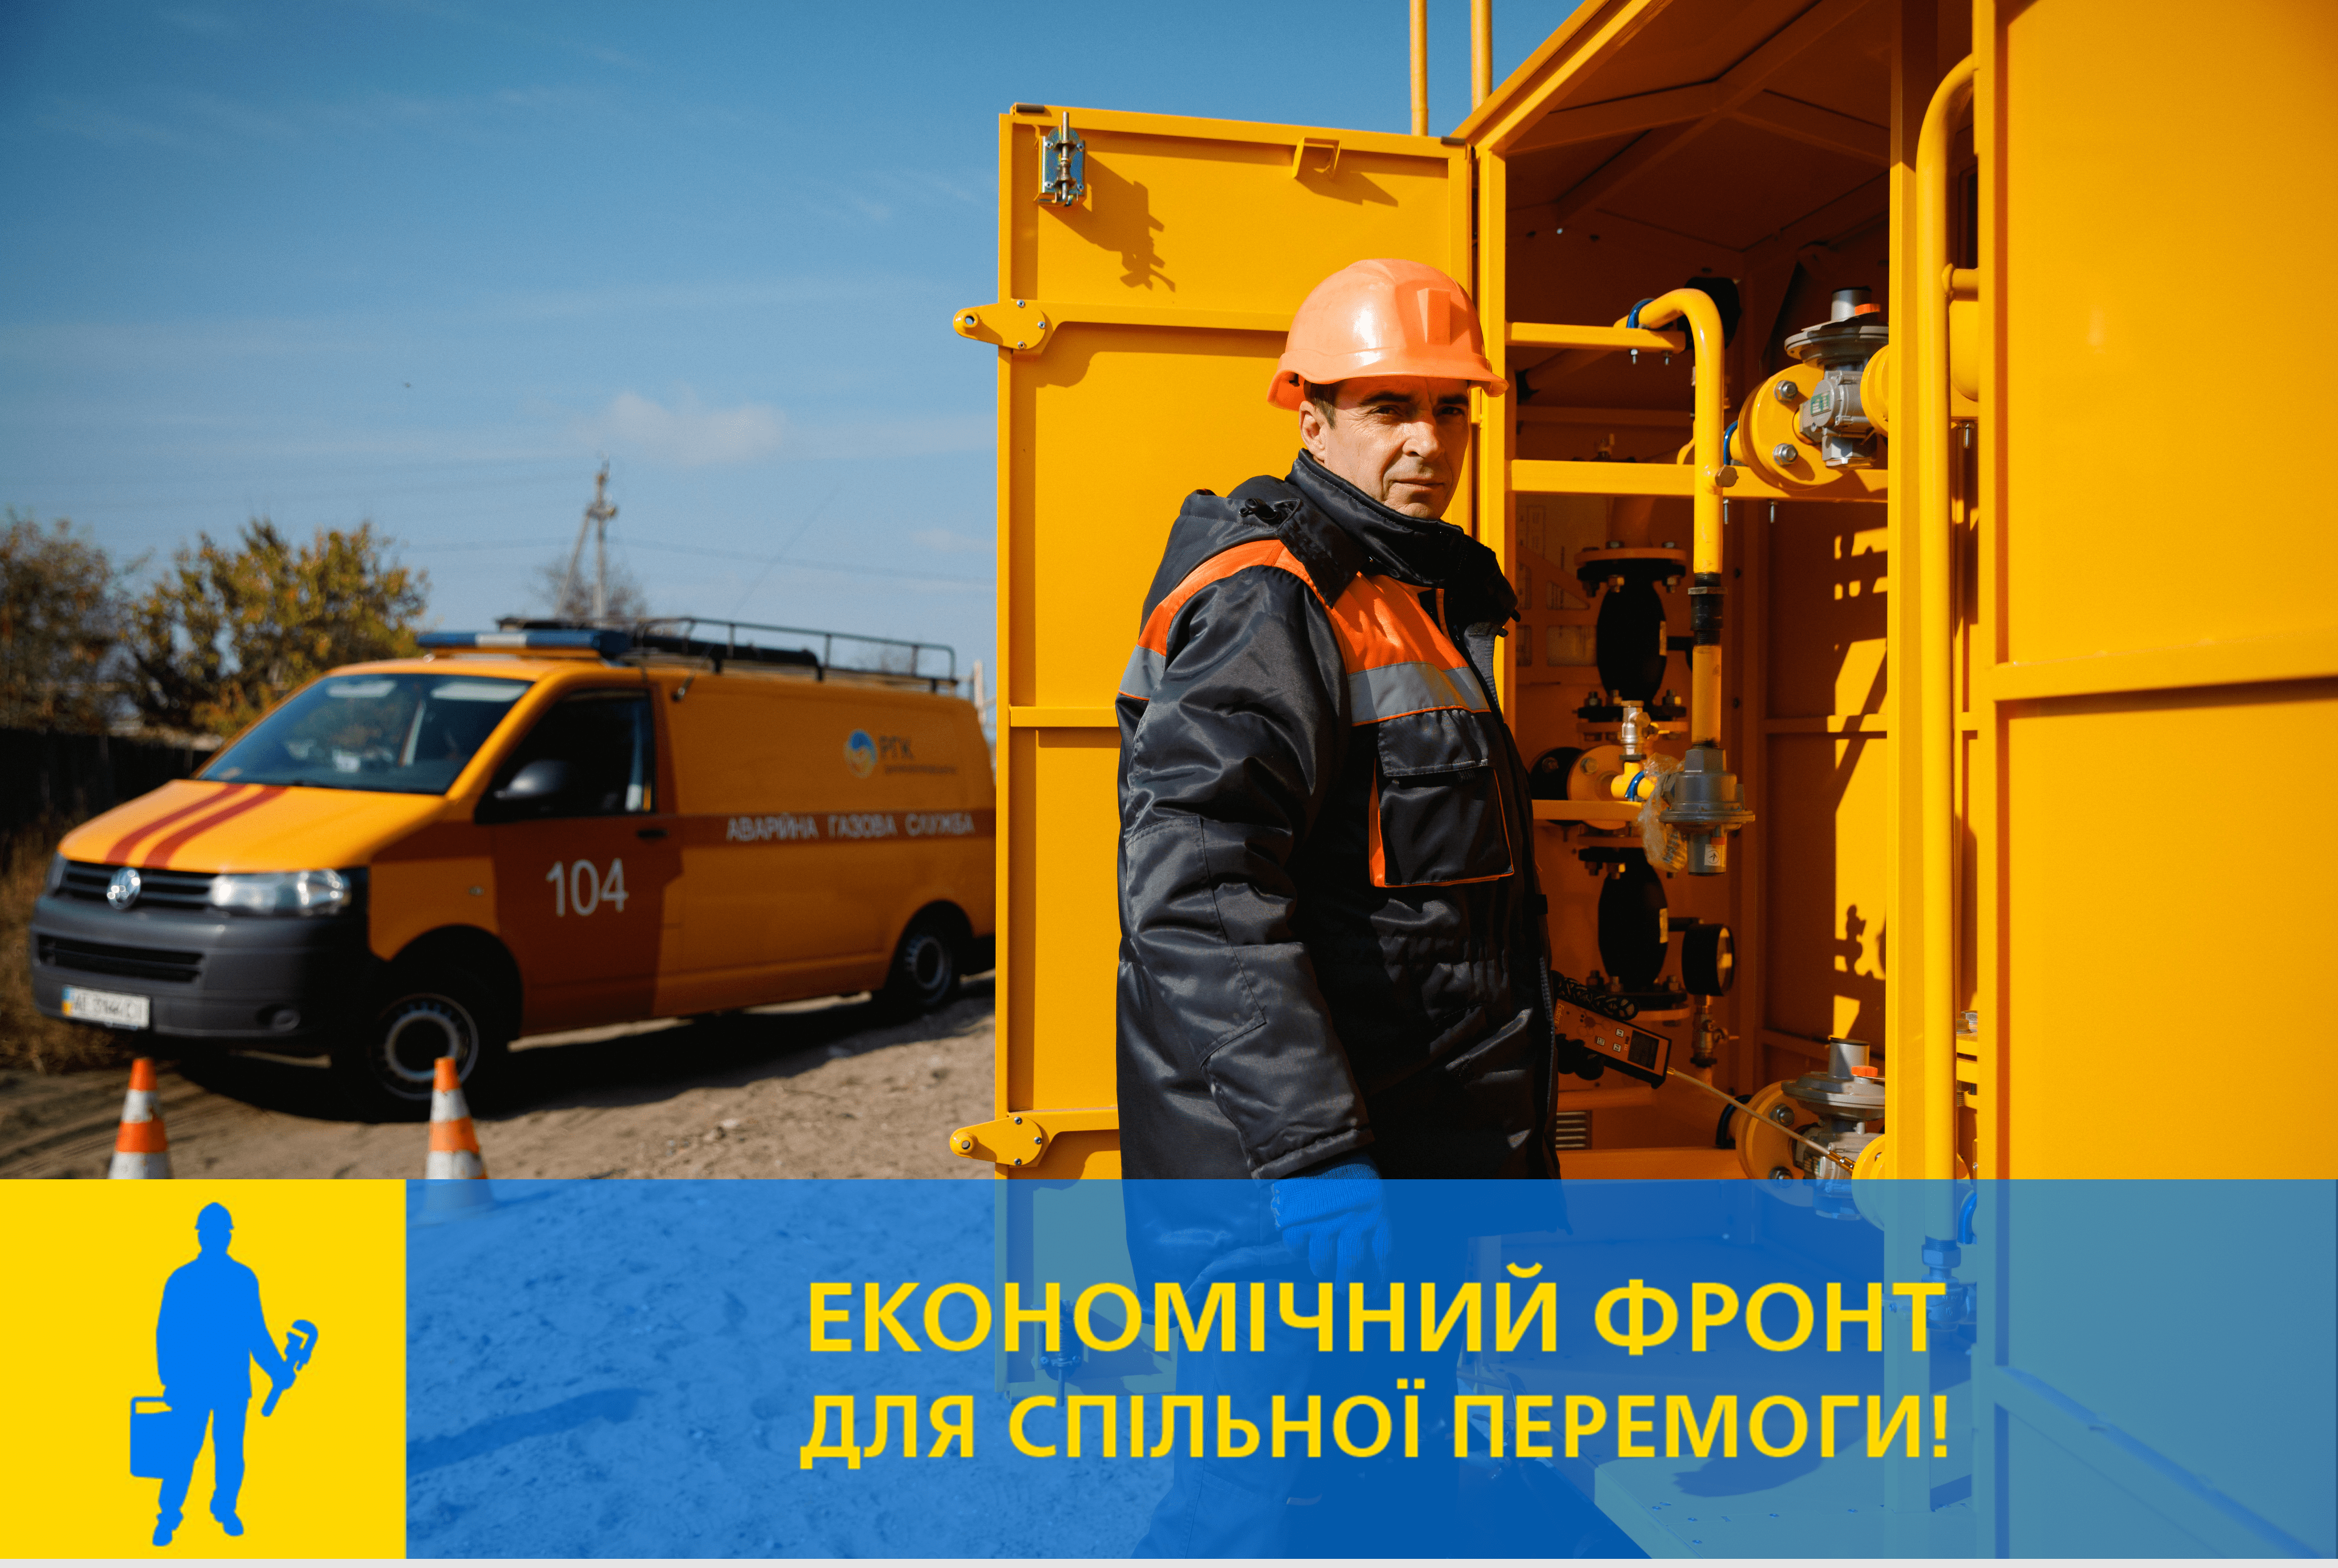 Дніпропетровськгаз відновлює планові роботи з обстеження систем газопостачання  